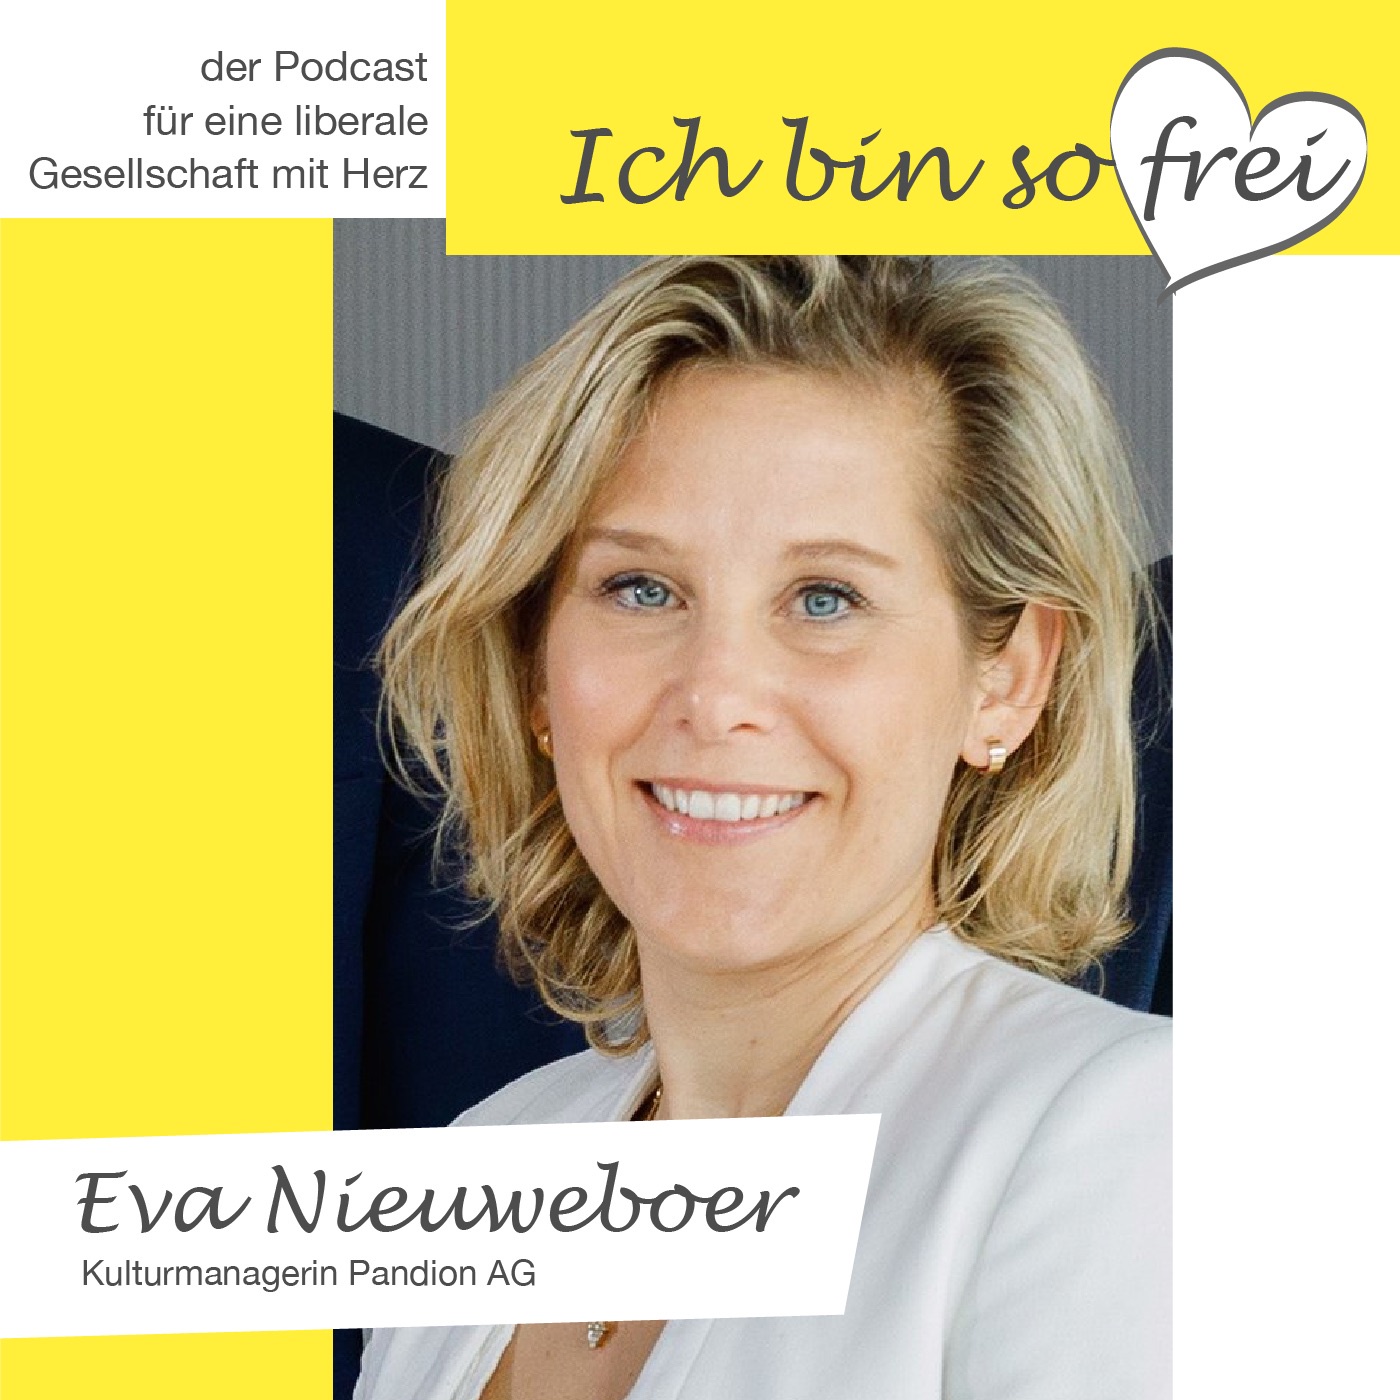 #3 Eva Nieuweboer über zu hohe Ansprüche, Selbstzensur und Räume für Künstler zur Zwischennutzung